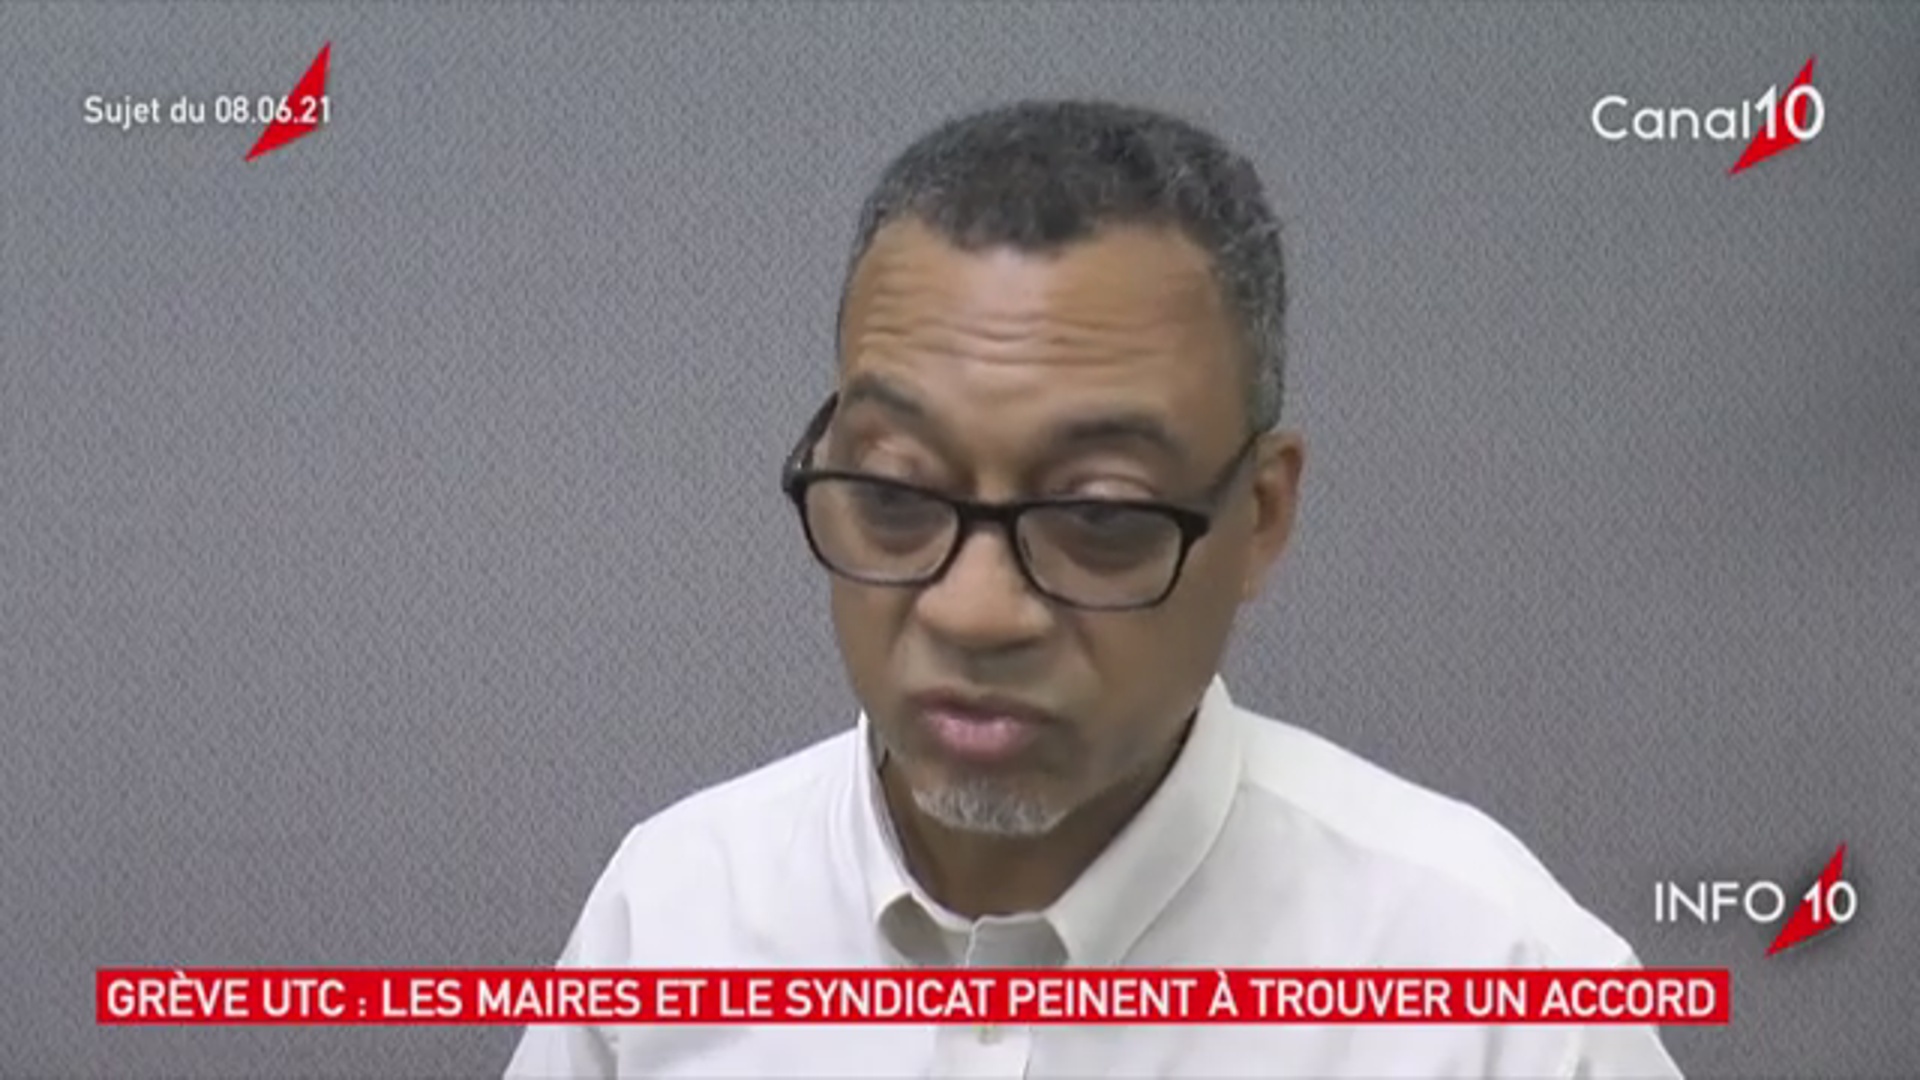 [Vidéo] Onews Guadeloupe. Le Jt de Canal 10.